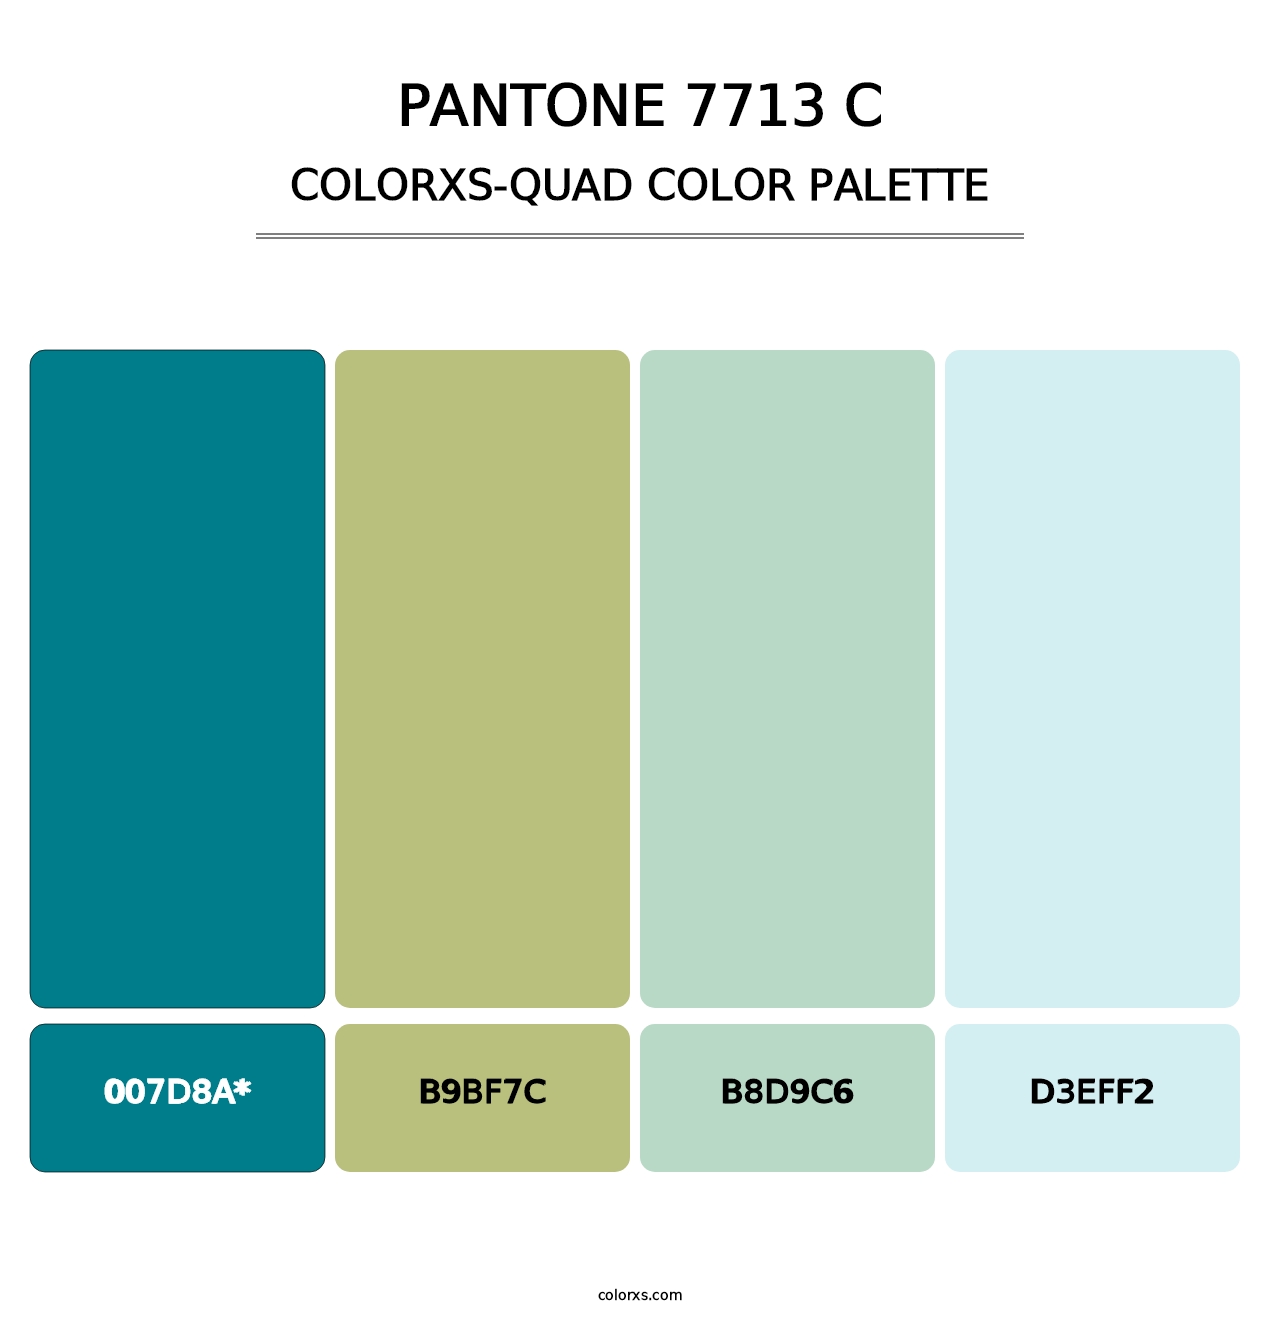 PANTONE 7713 C - Colorxs Quad Palette